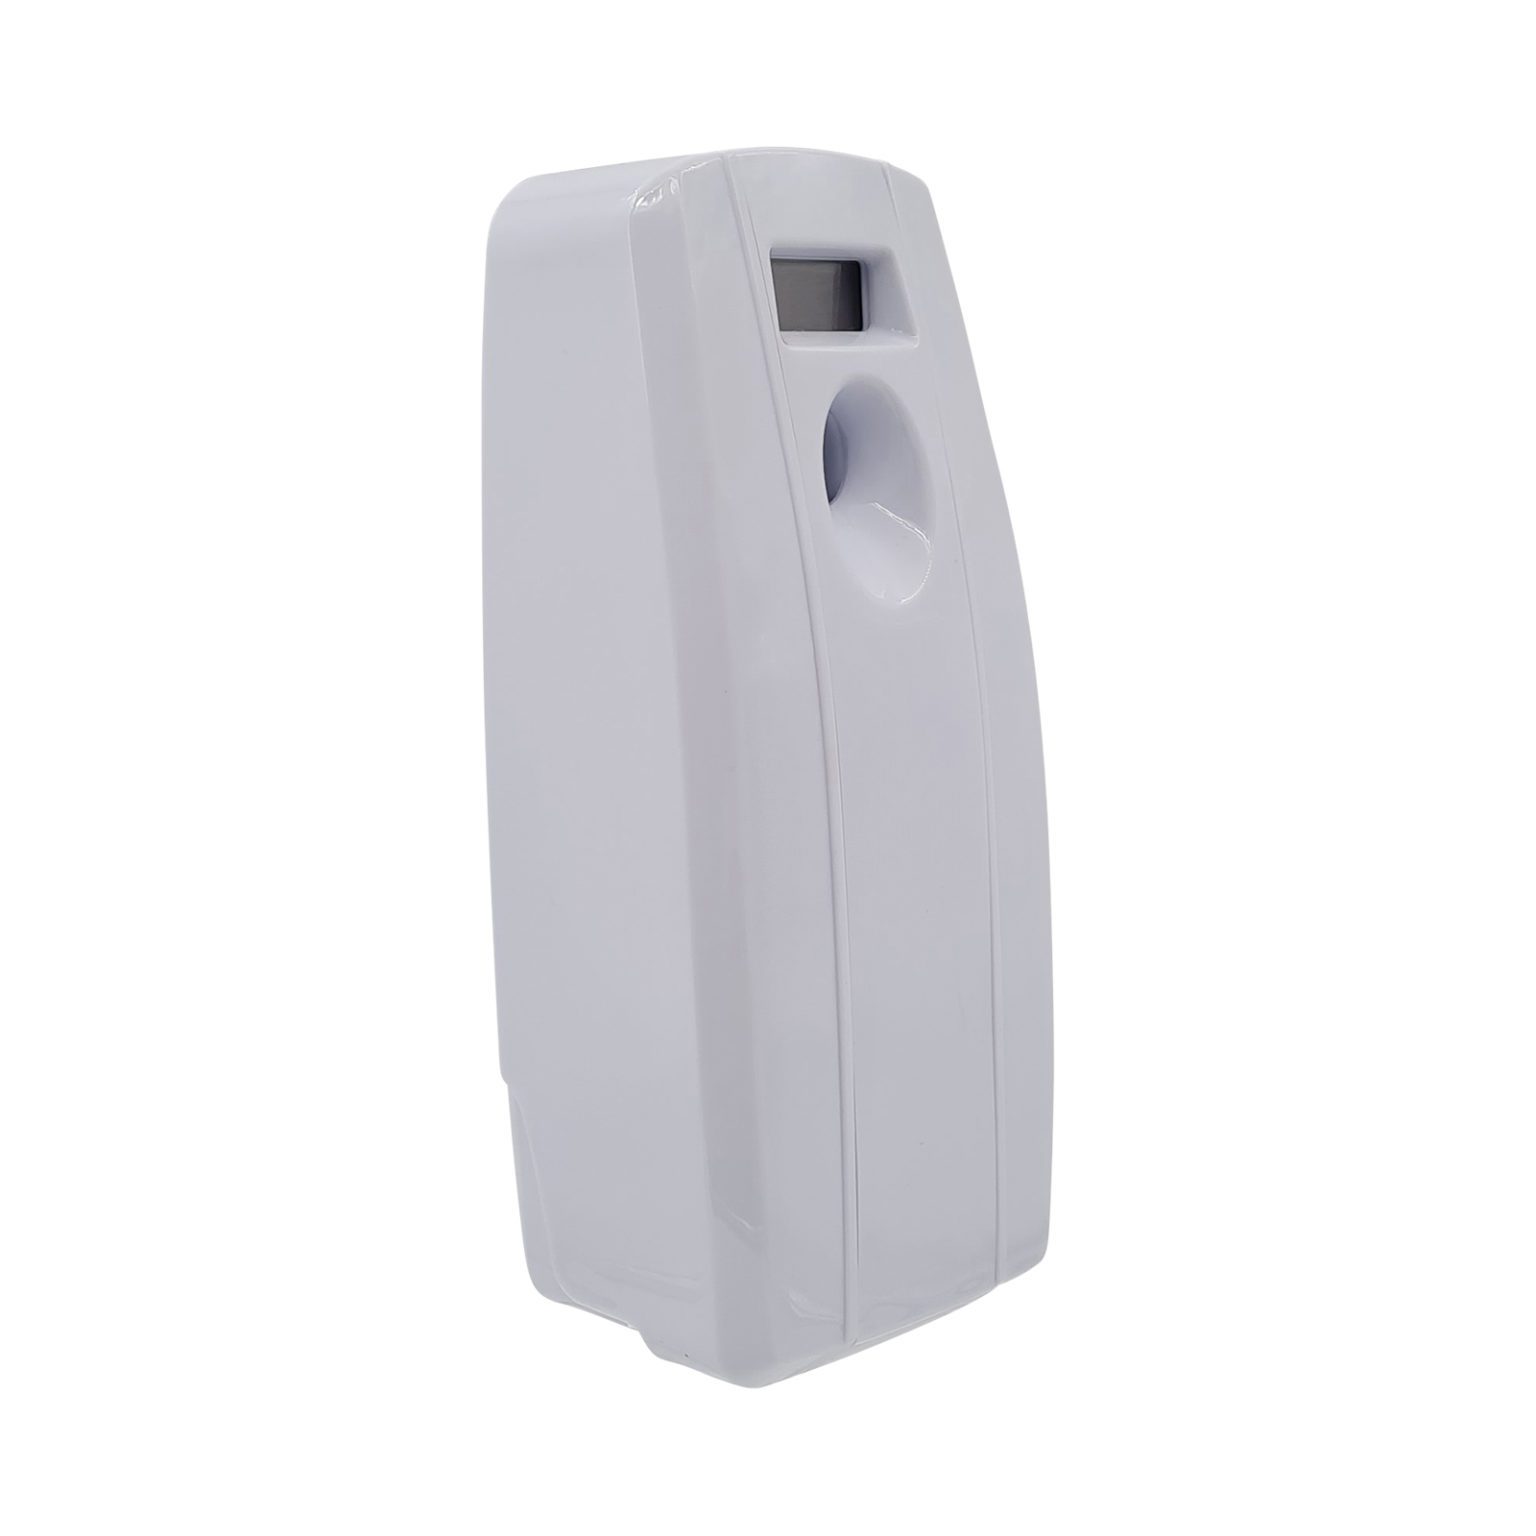 07524-Digital-Aerosol-Air-Freshener-Dispenser-V250A-White-Right-Angle